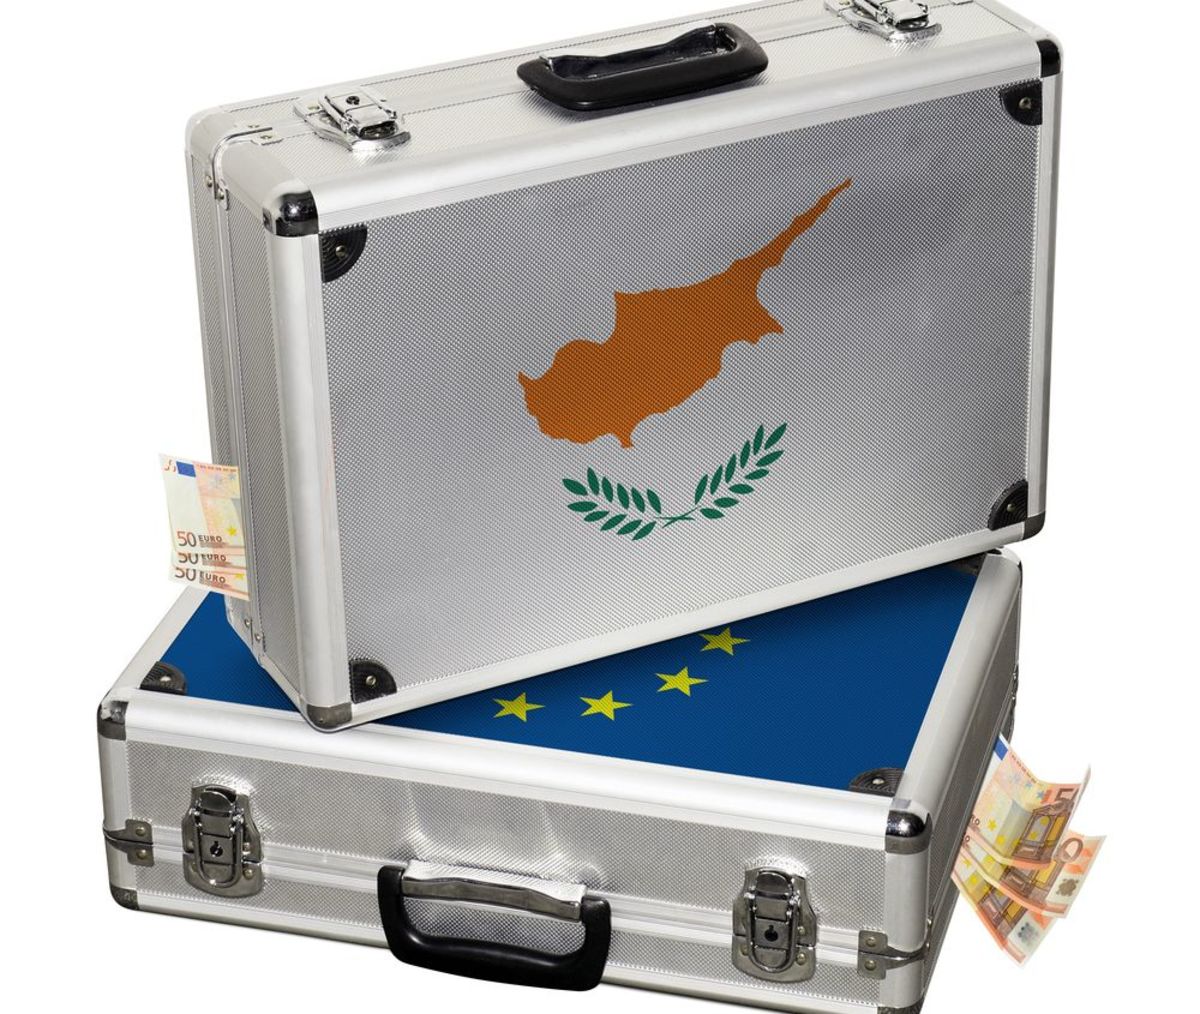 Ήρθε η ώρα της Κύπρου για προσφυγή στο μηχανισμό στήριξης